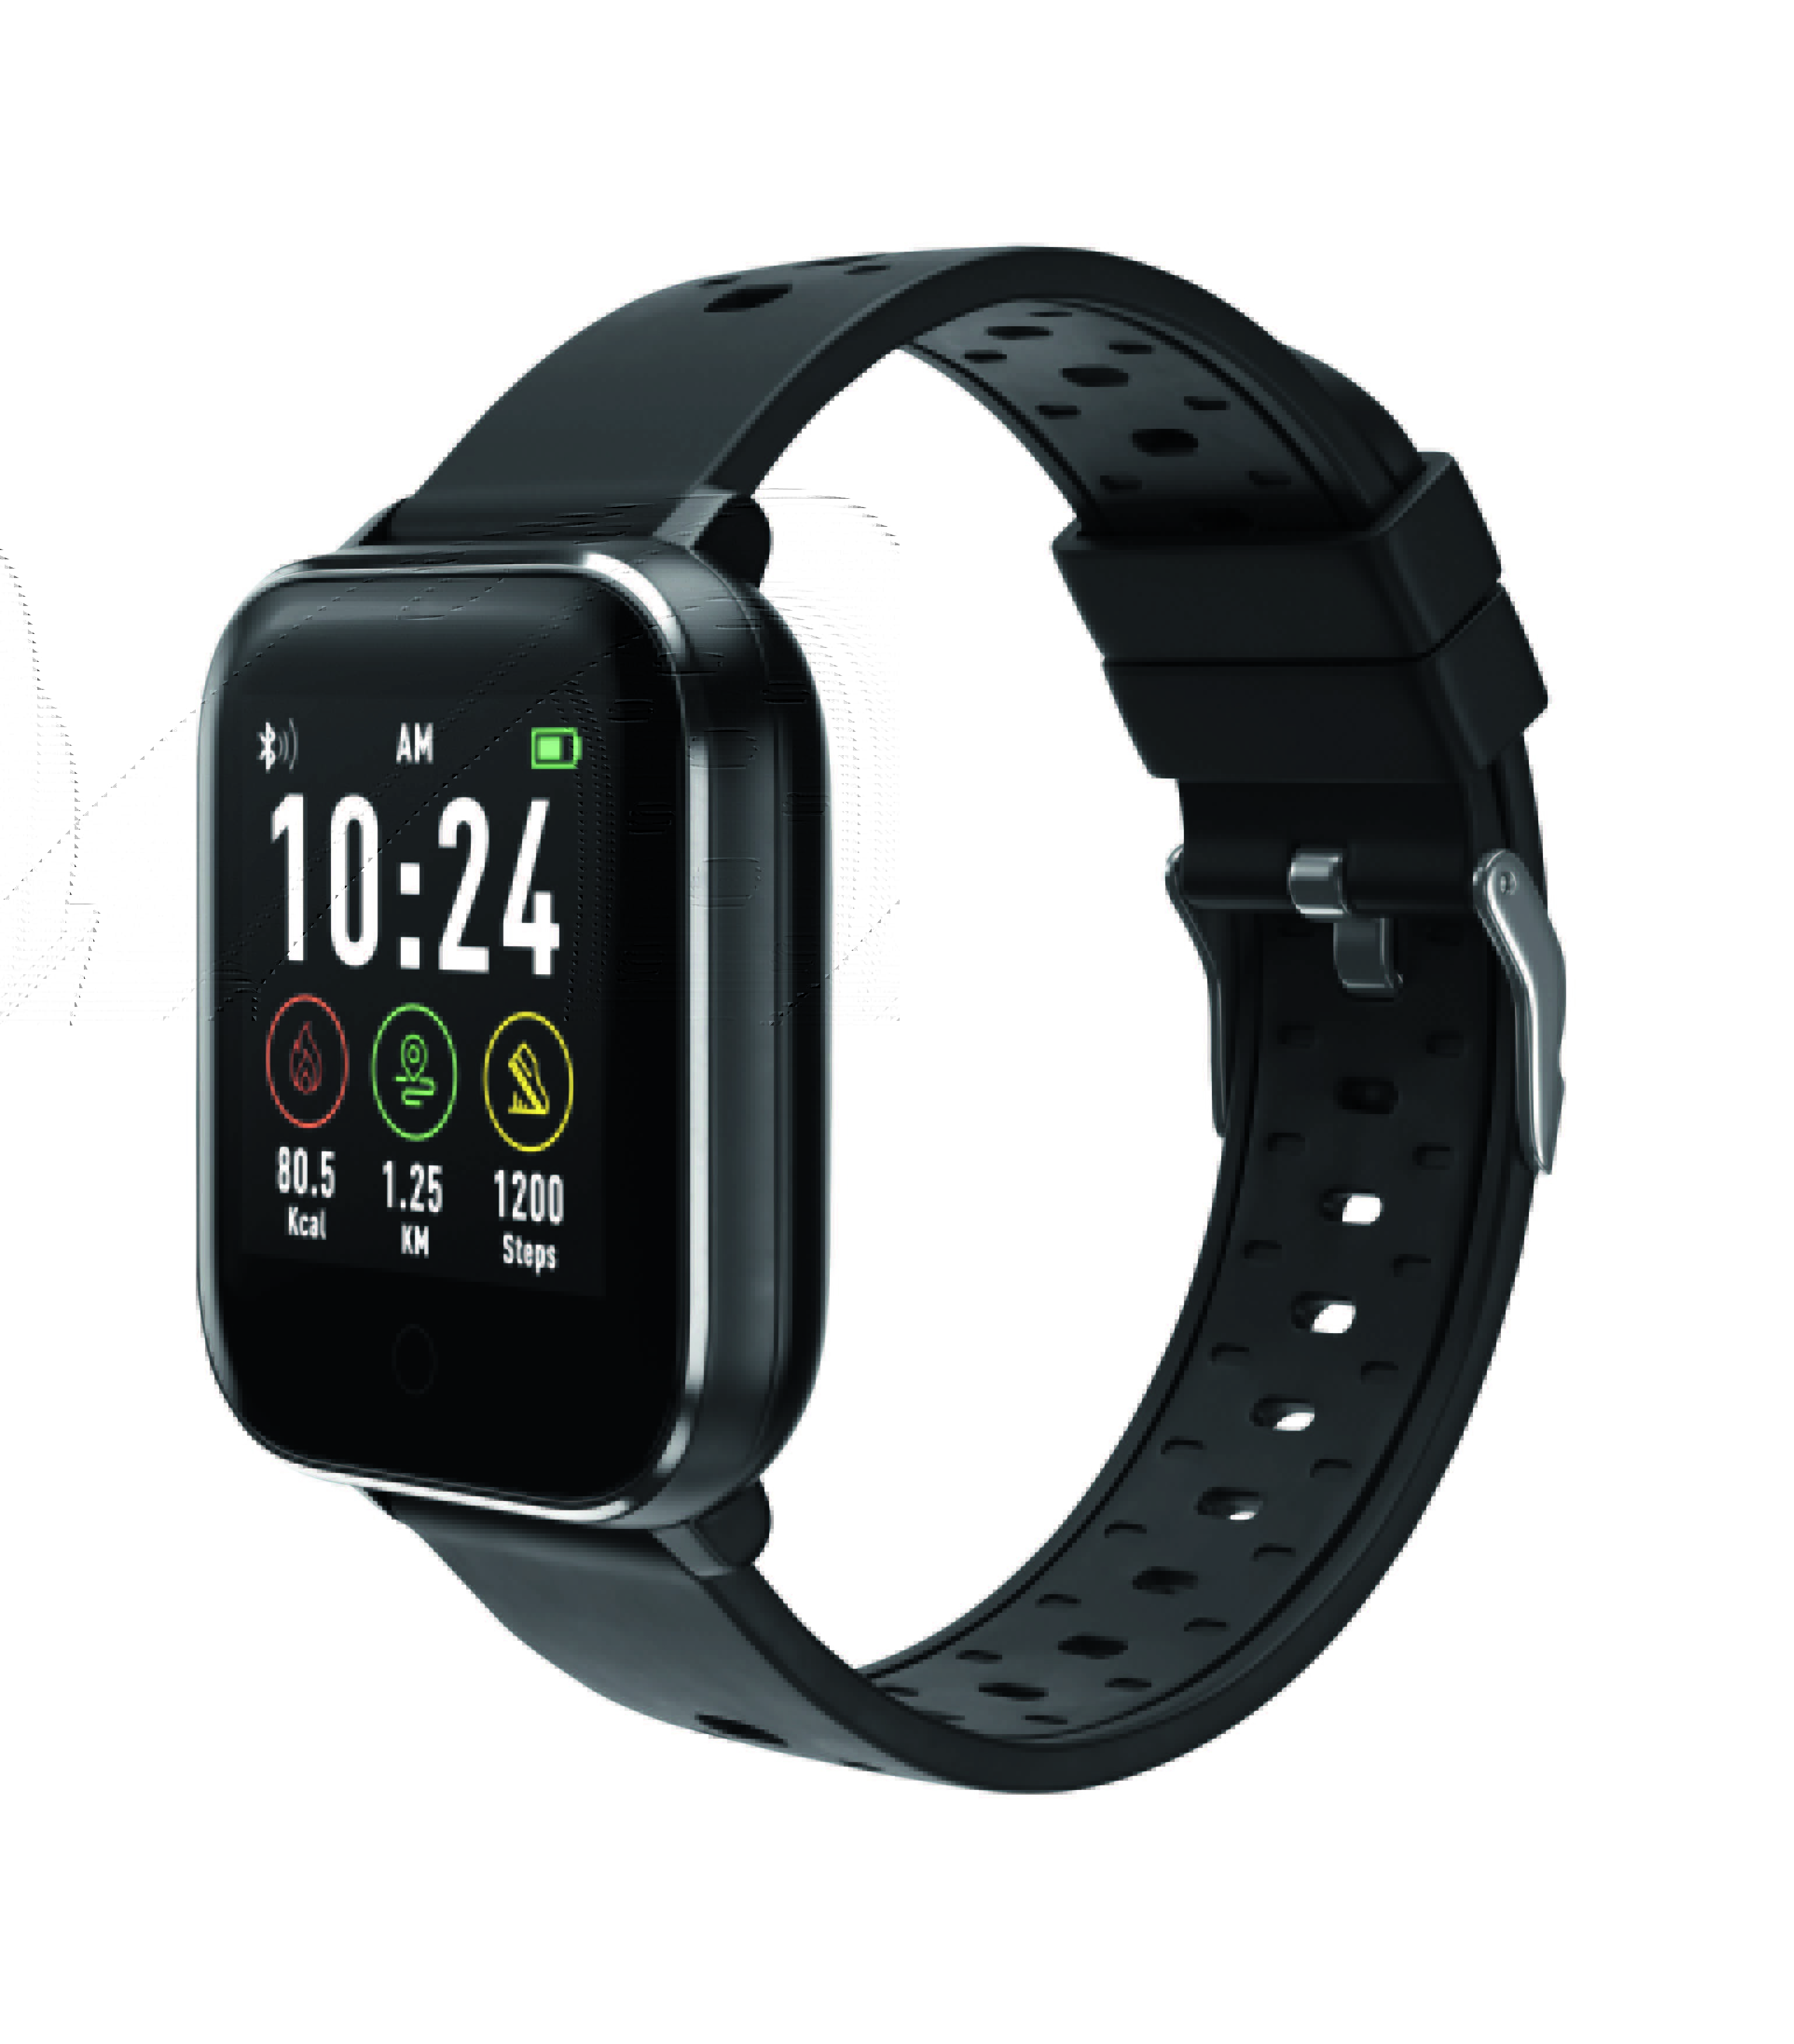 Lidl sort sa version de l'Apple Watch à moins de 40 euros. © Lidl